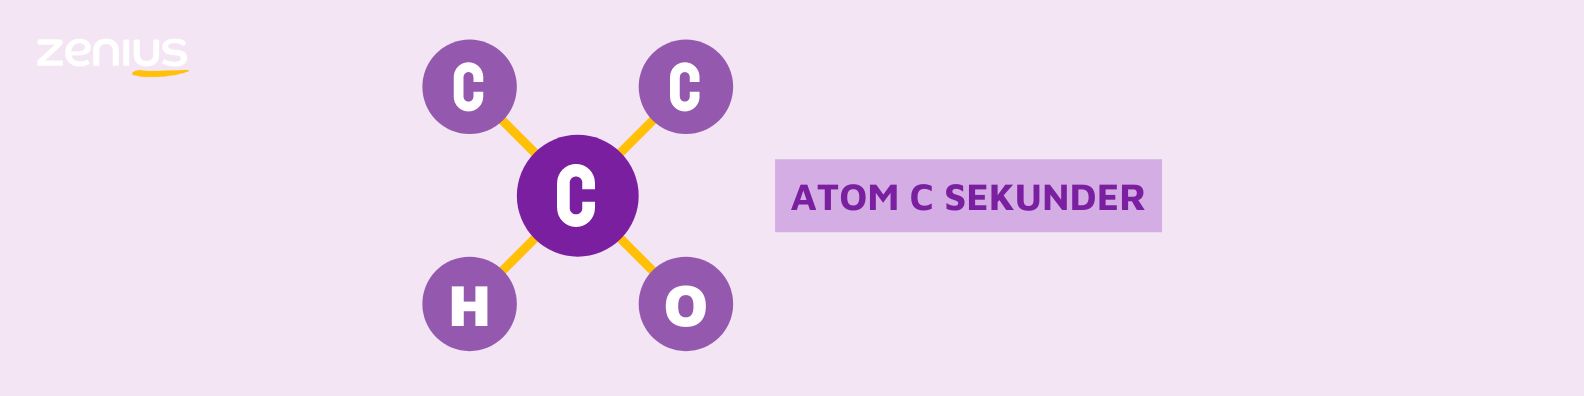 Atom C sekunder berarti suatu atom karbon mengikat dua atom karbon lainnya